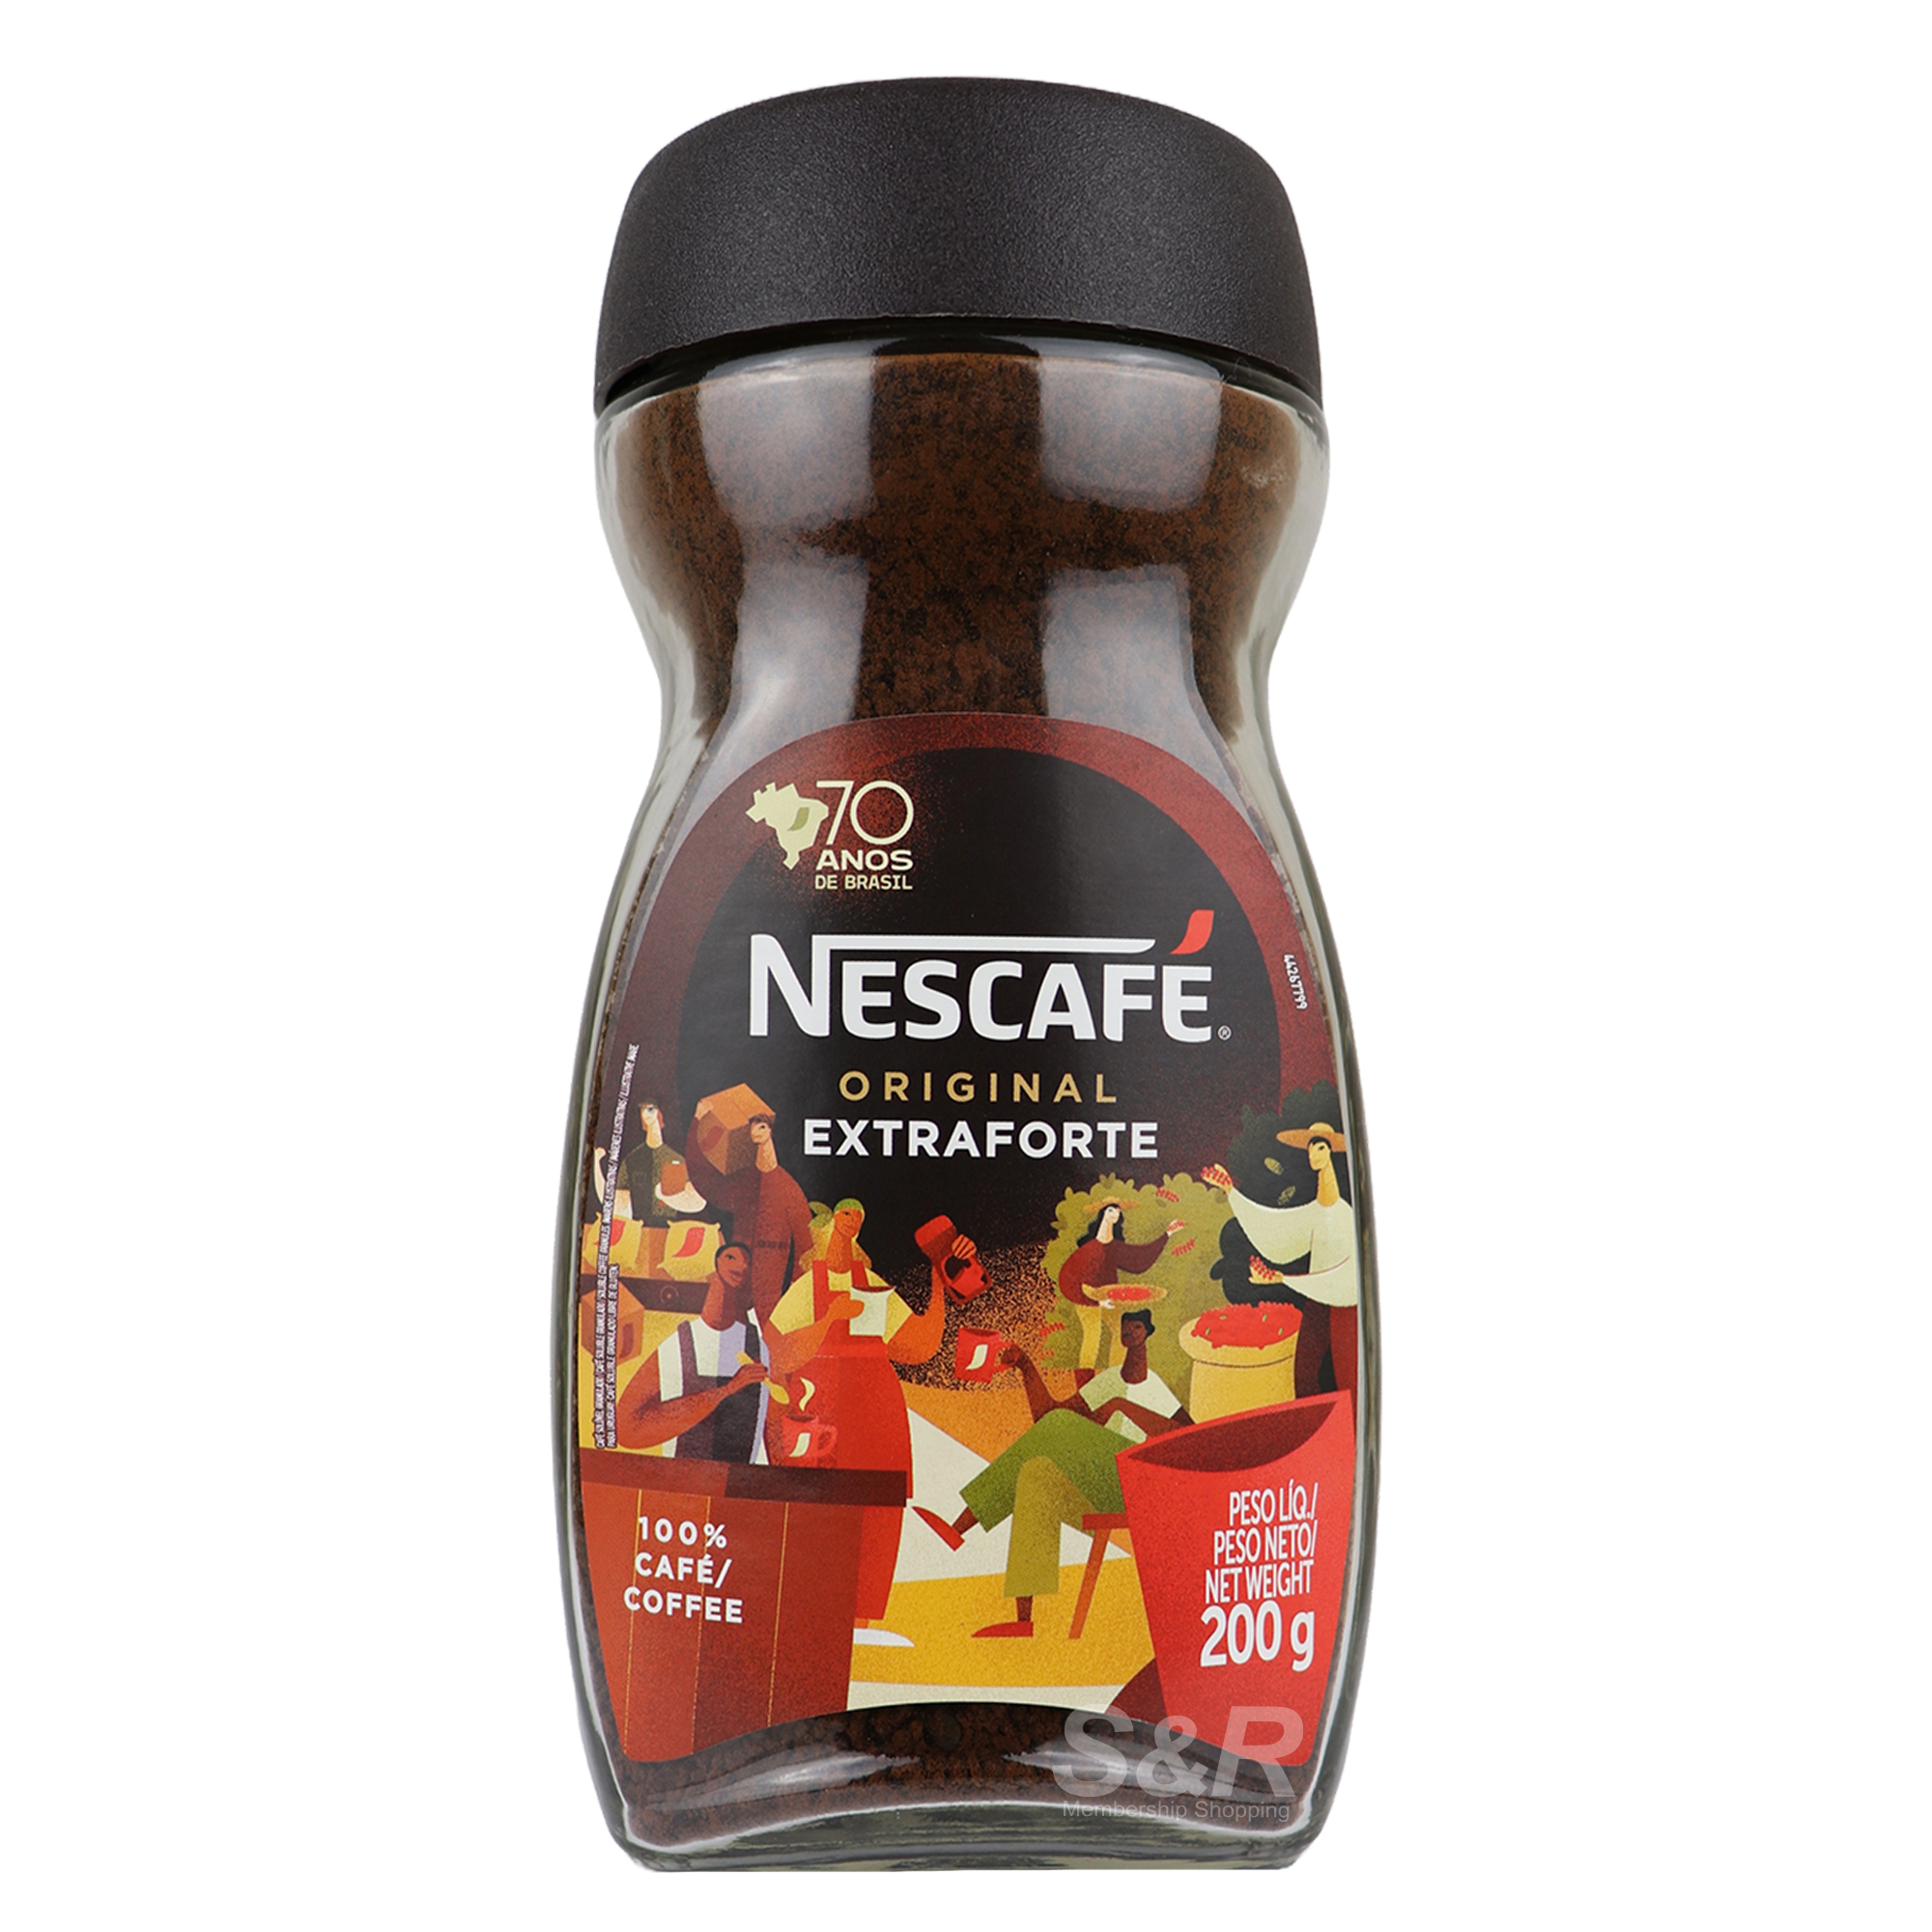 Nescafe Original Extraforte 200g